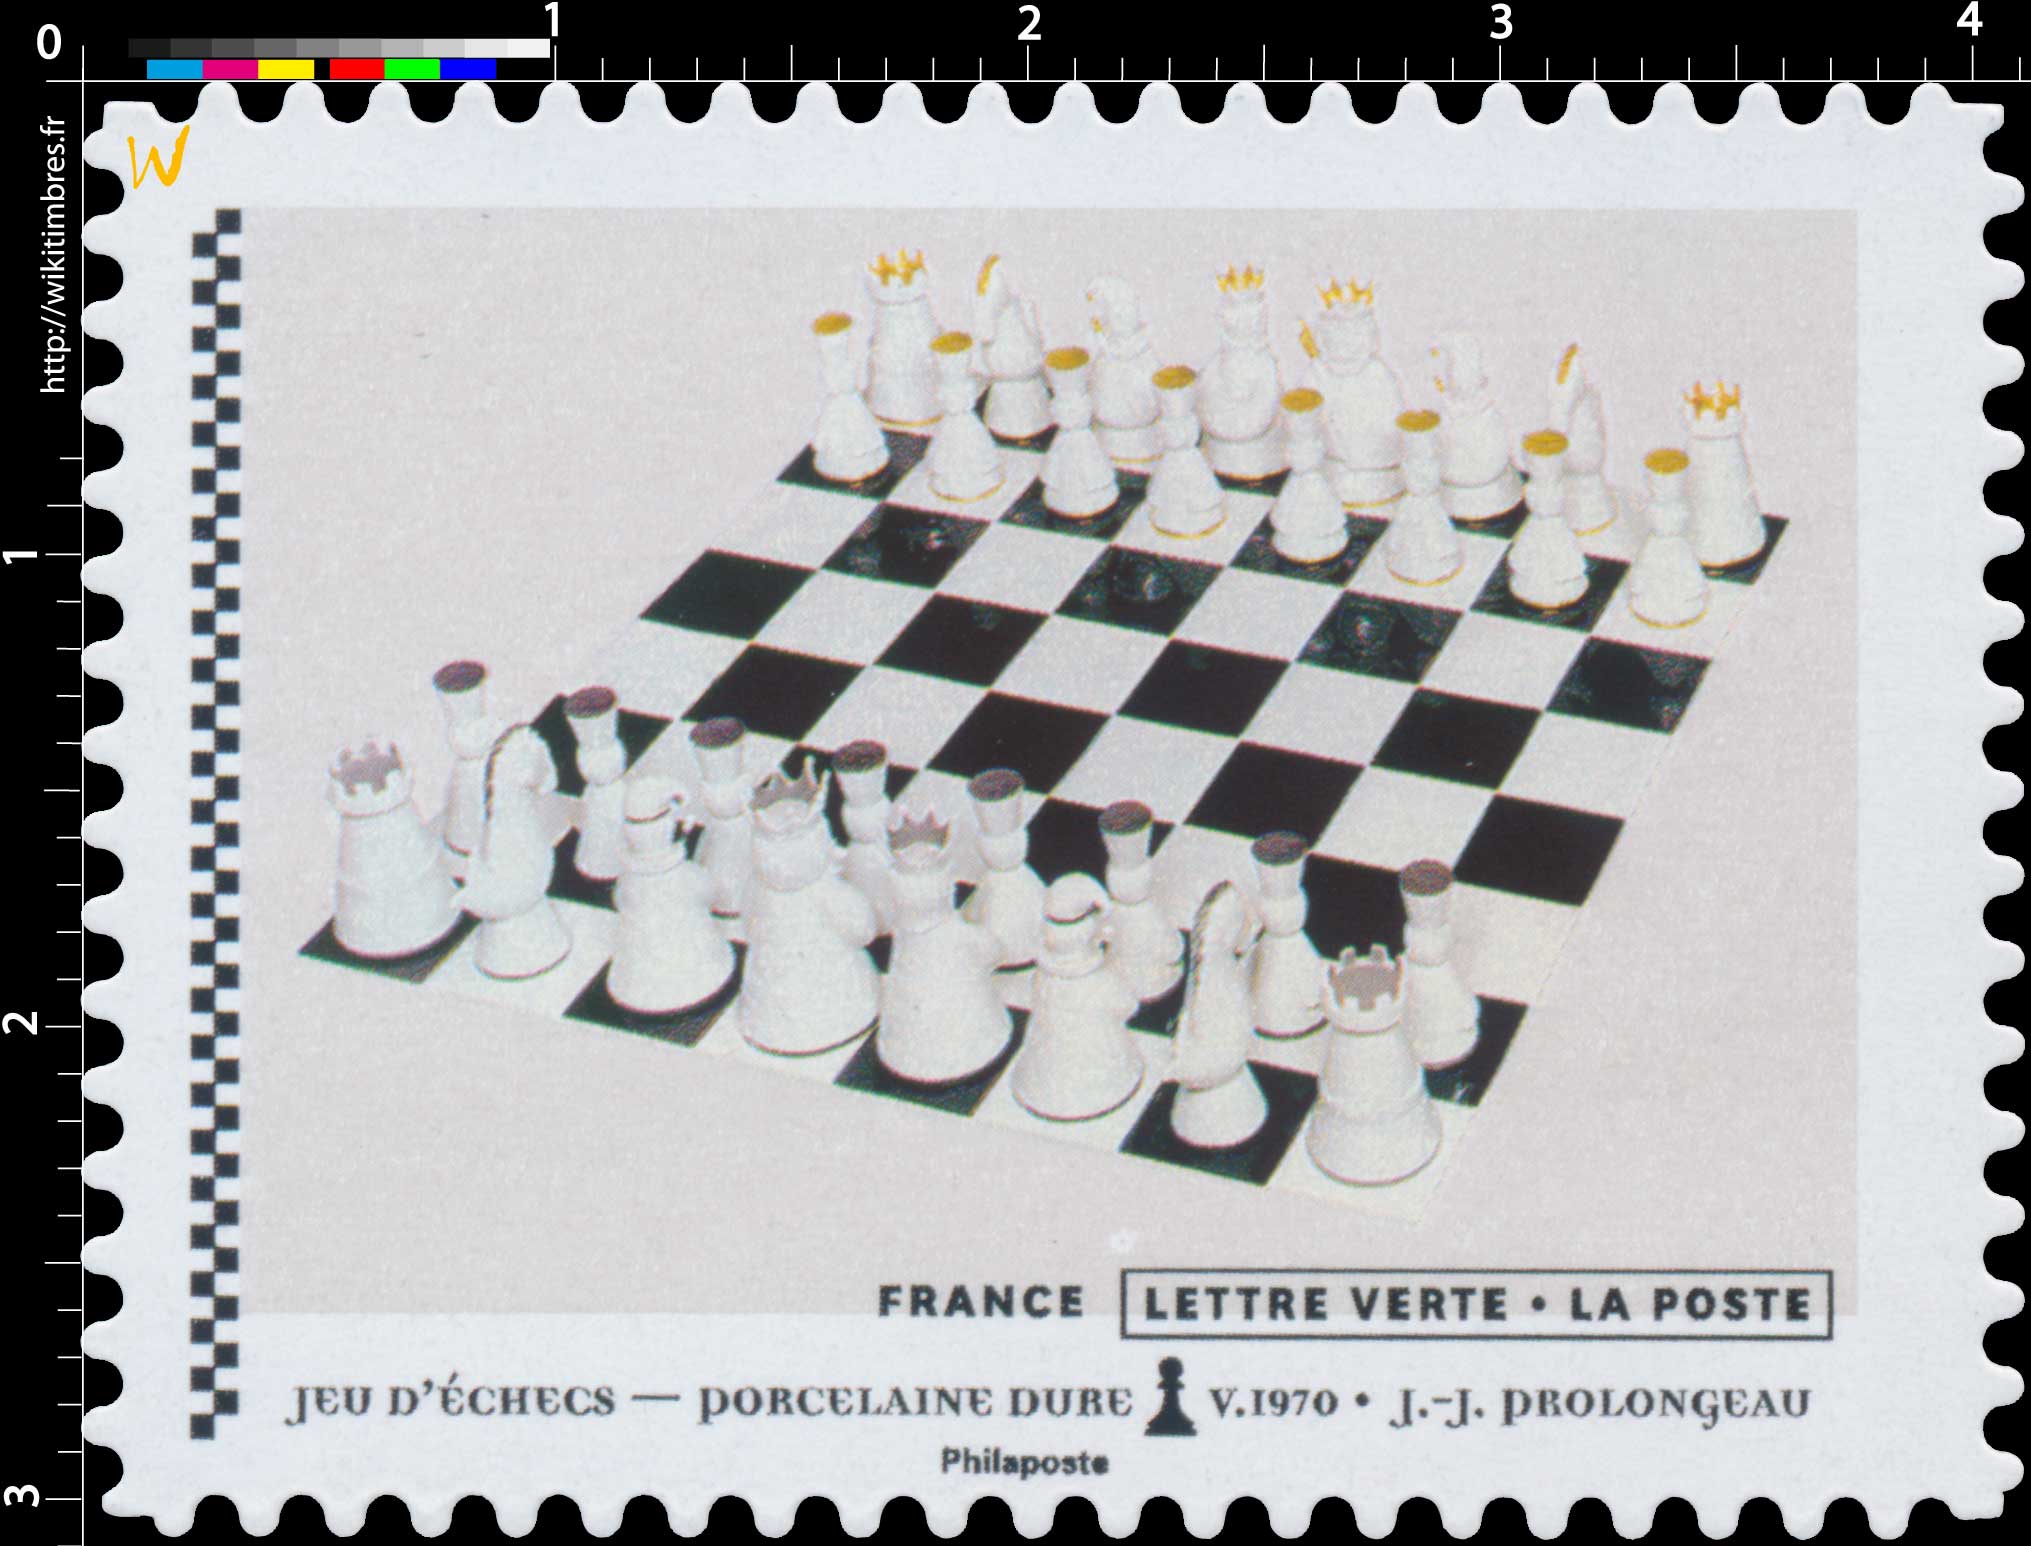 2021 Jeu d'échecs - Porcelaine dure V.1970 - J.J. Prolongeau 